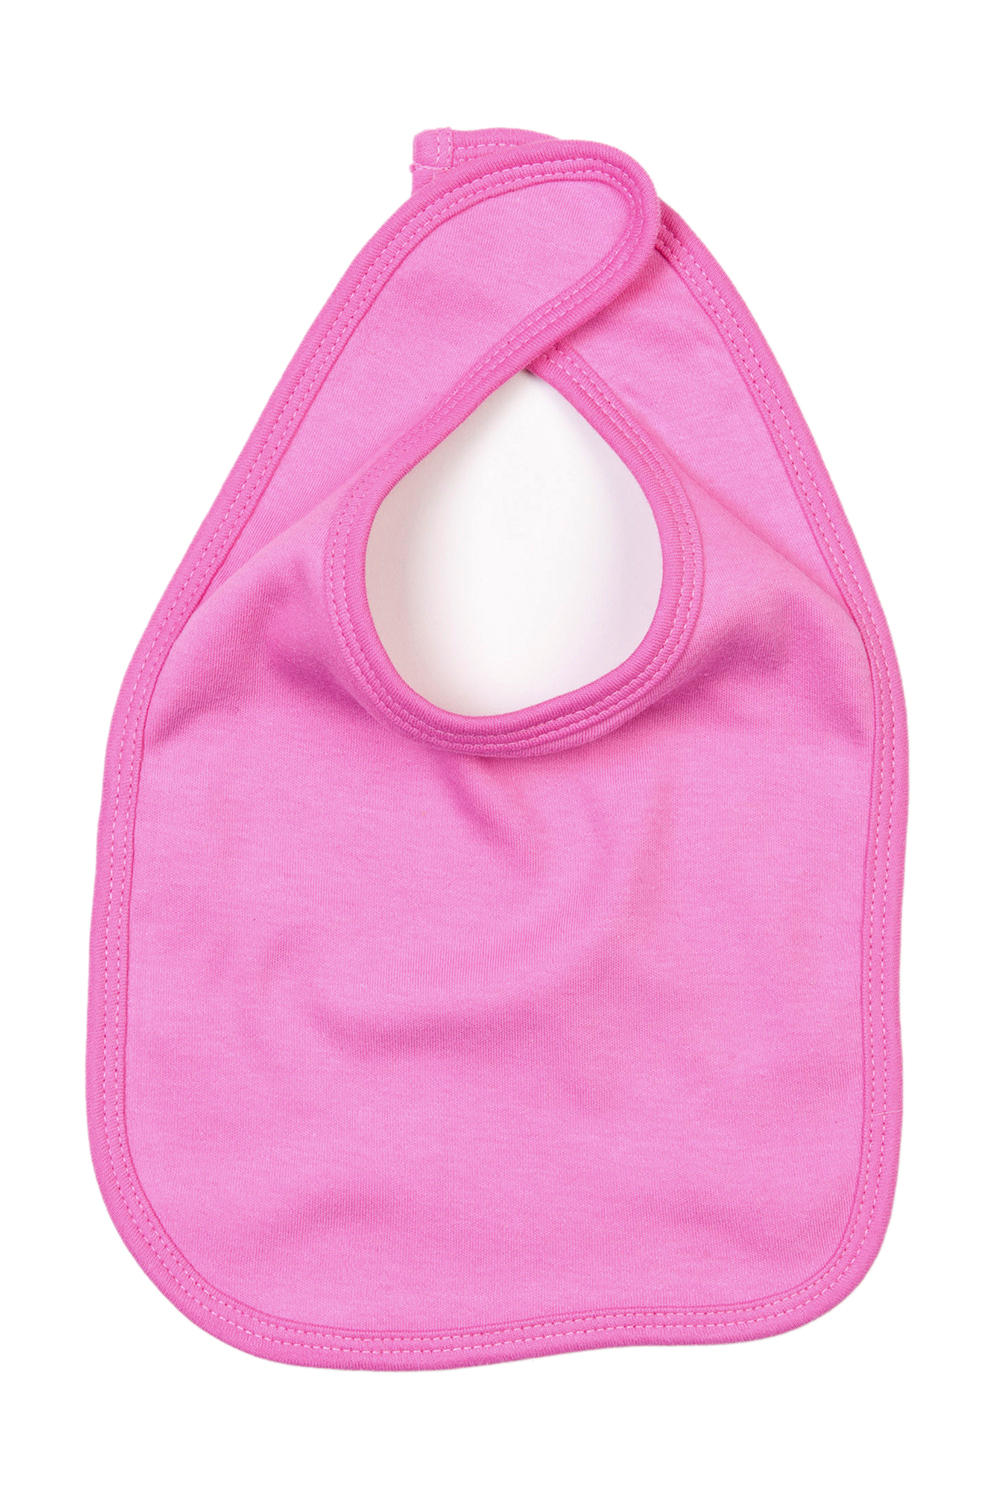 Podbradník pre bábätká - bubble gum pink